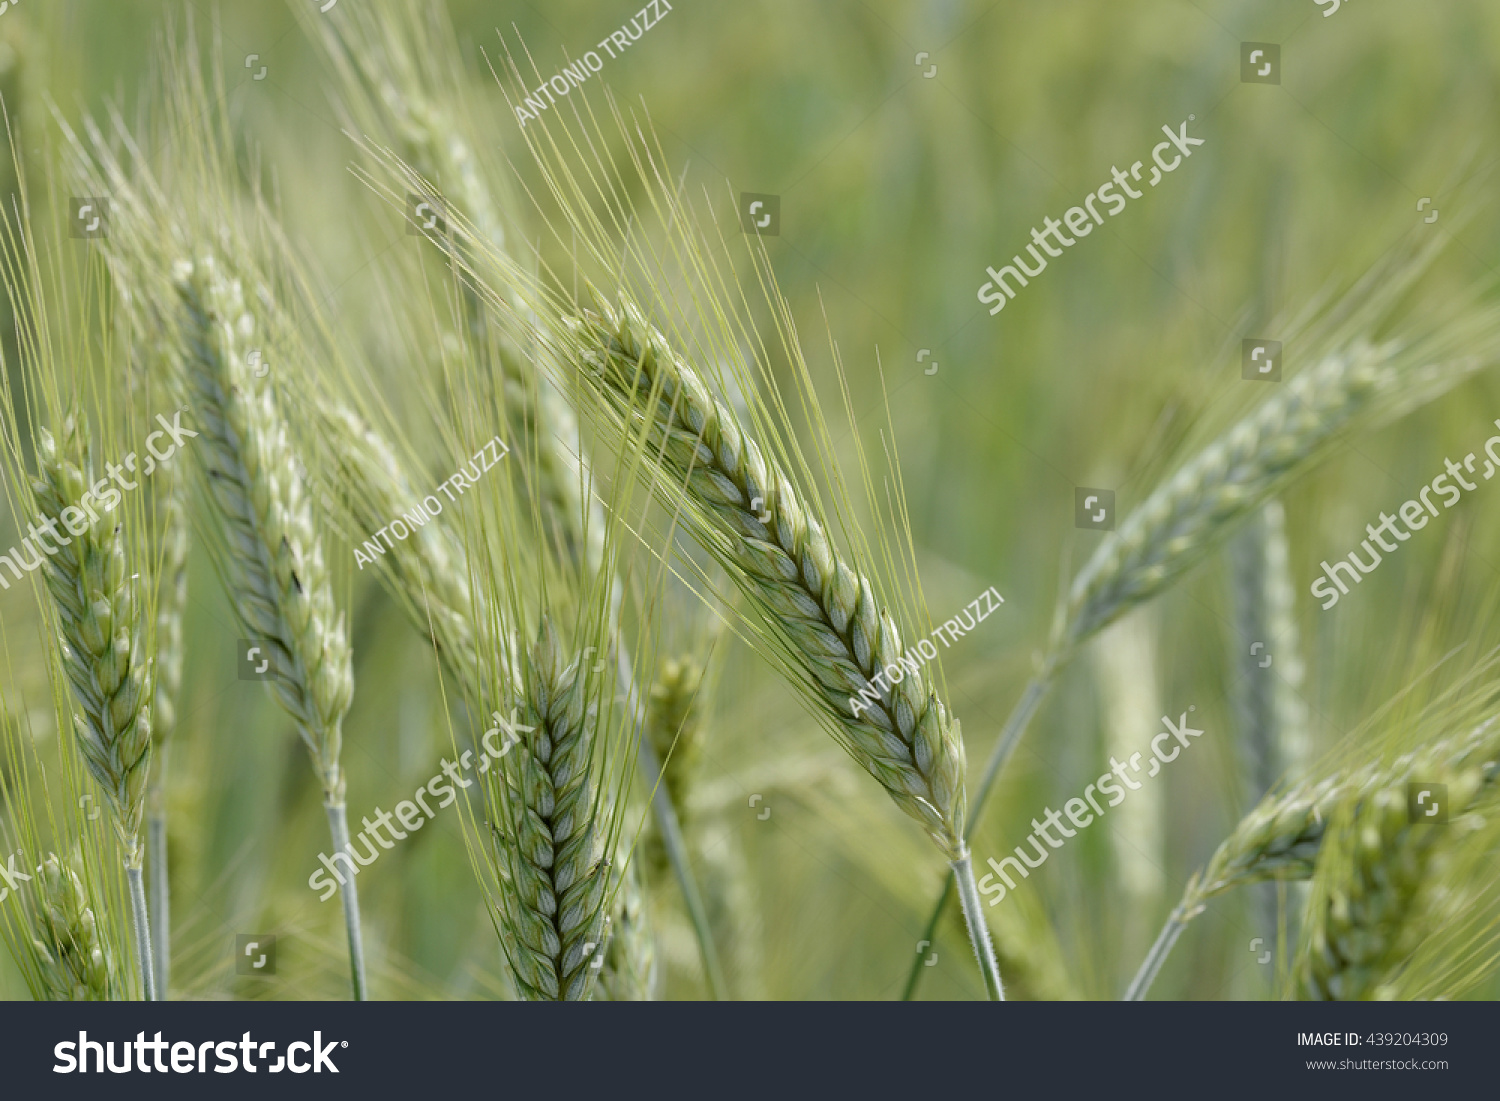 Green Ears of wheat in the field #439204309